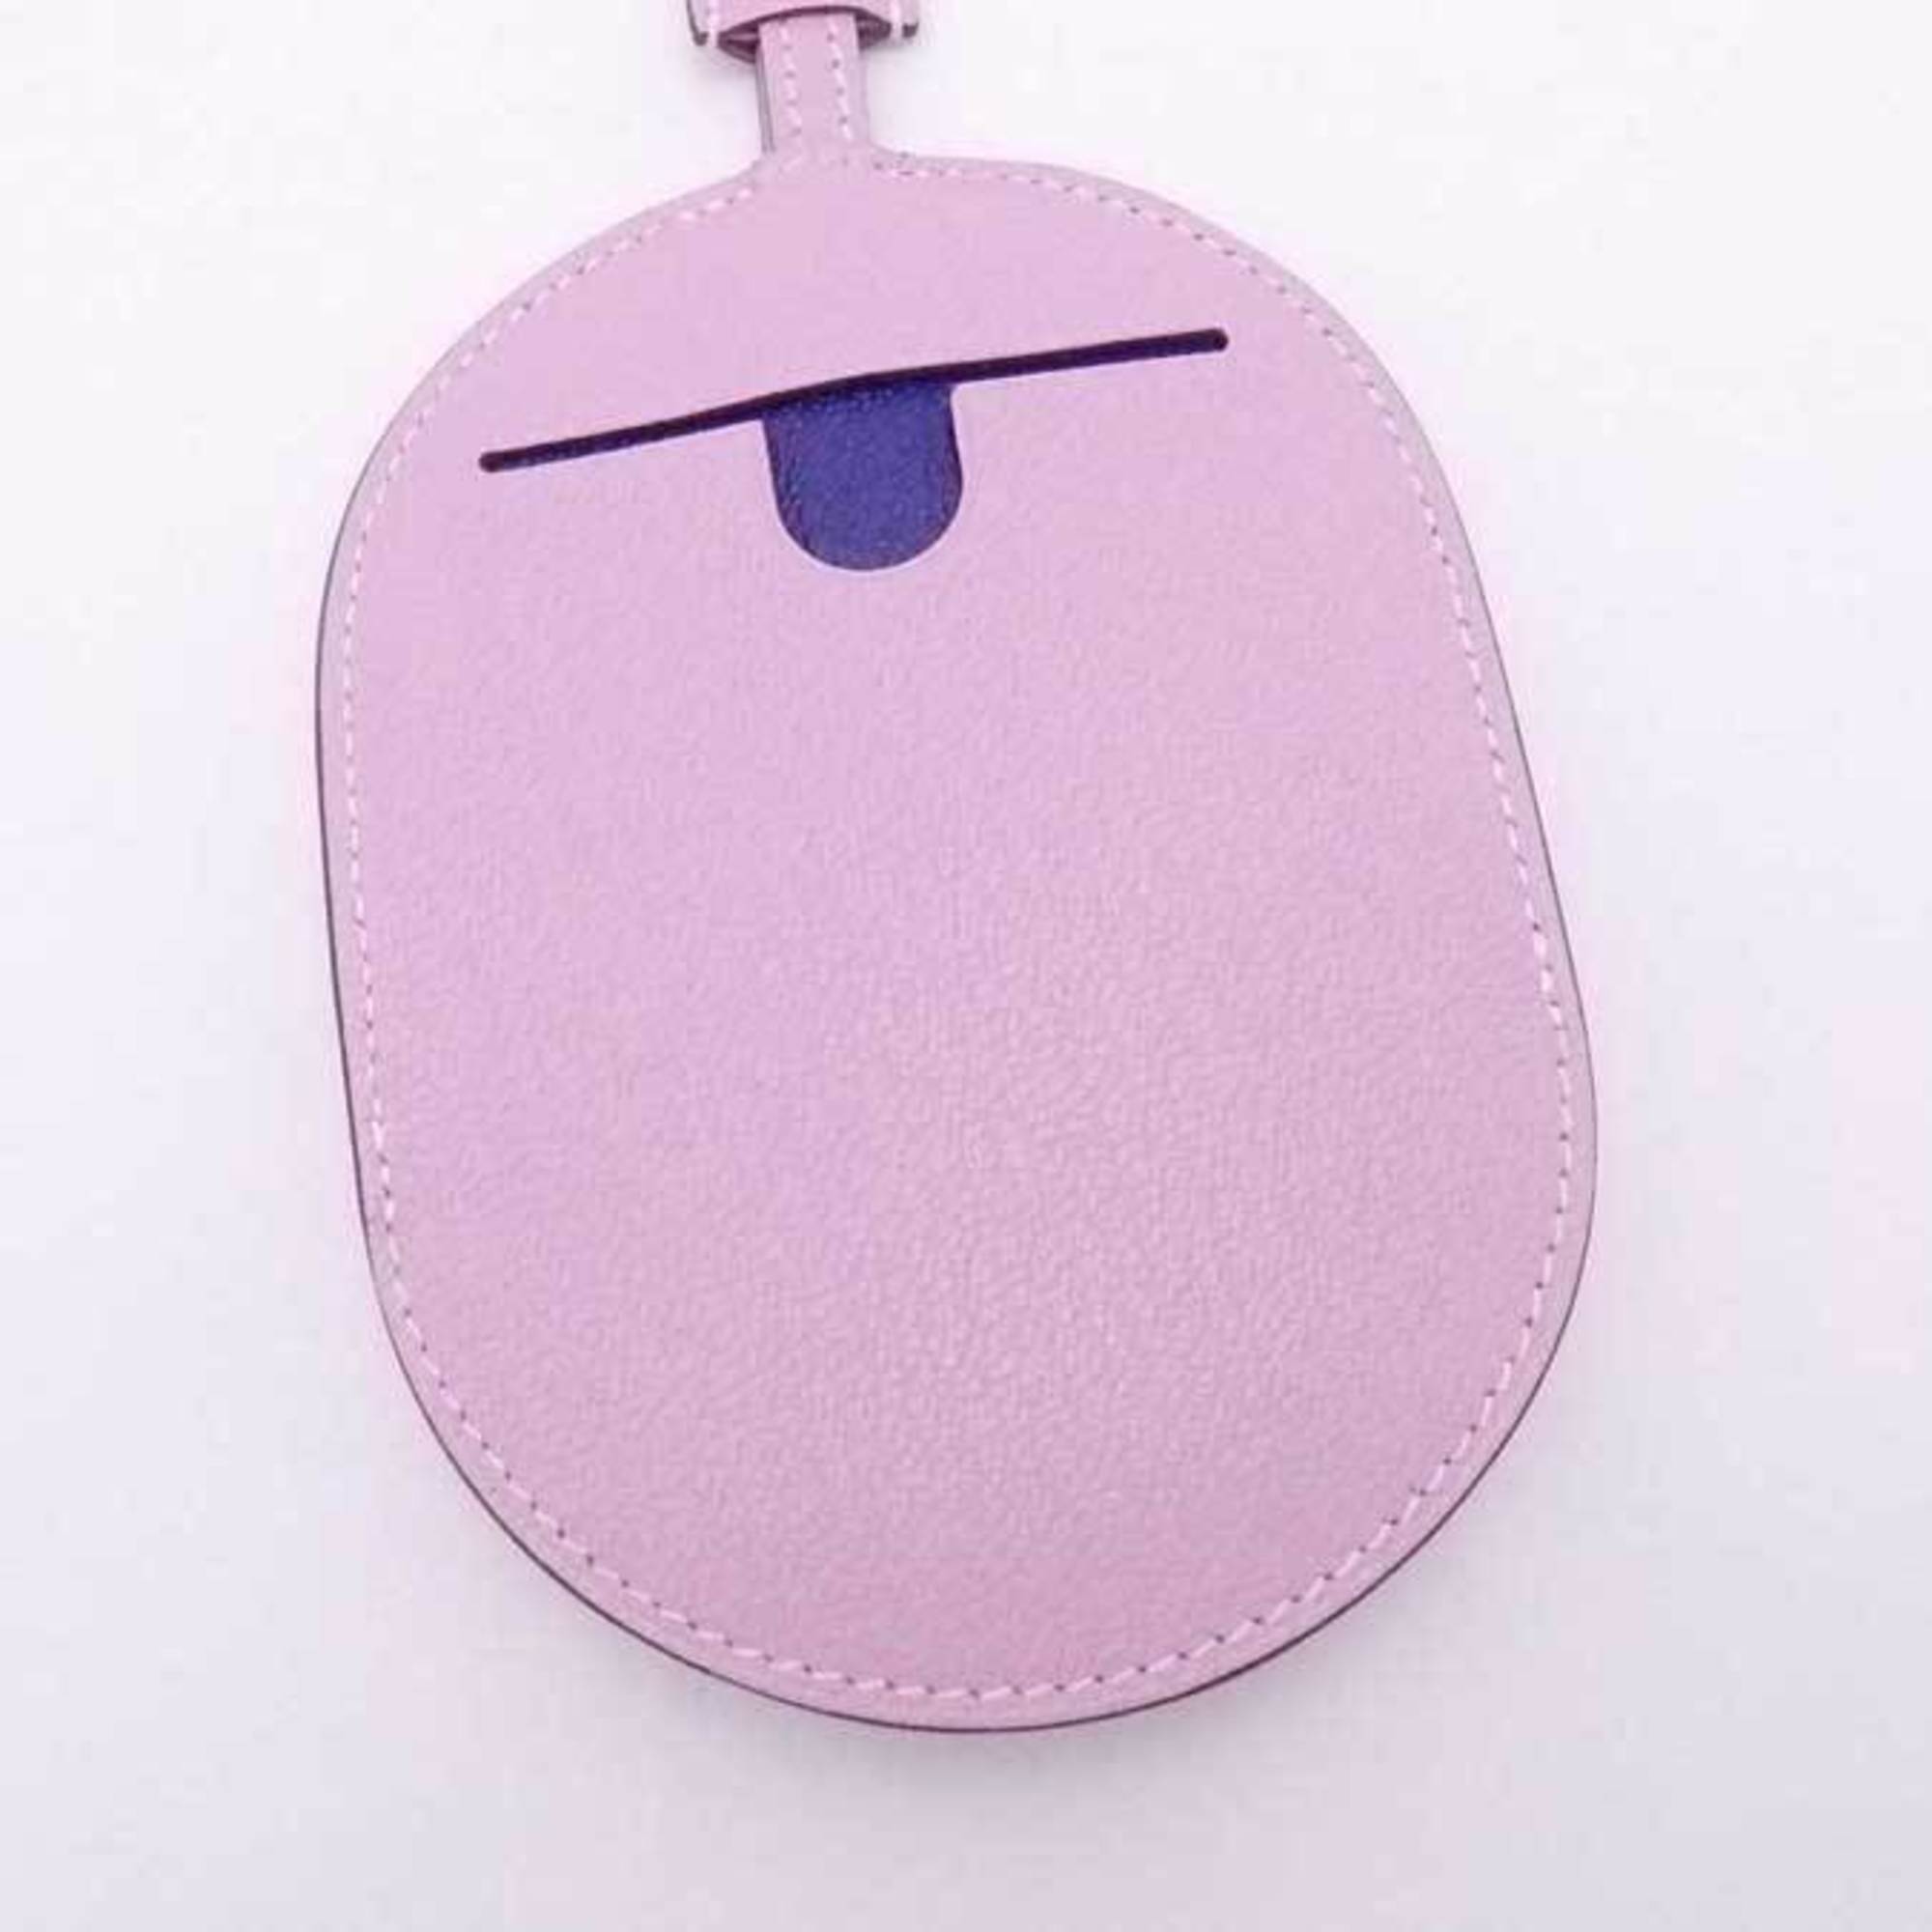 Hermes HERMES charm in the loop phone leather/metal light pink purple unisex